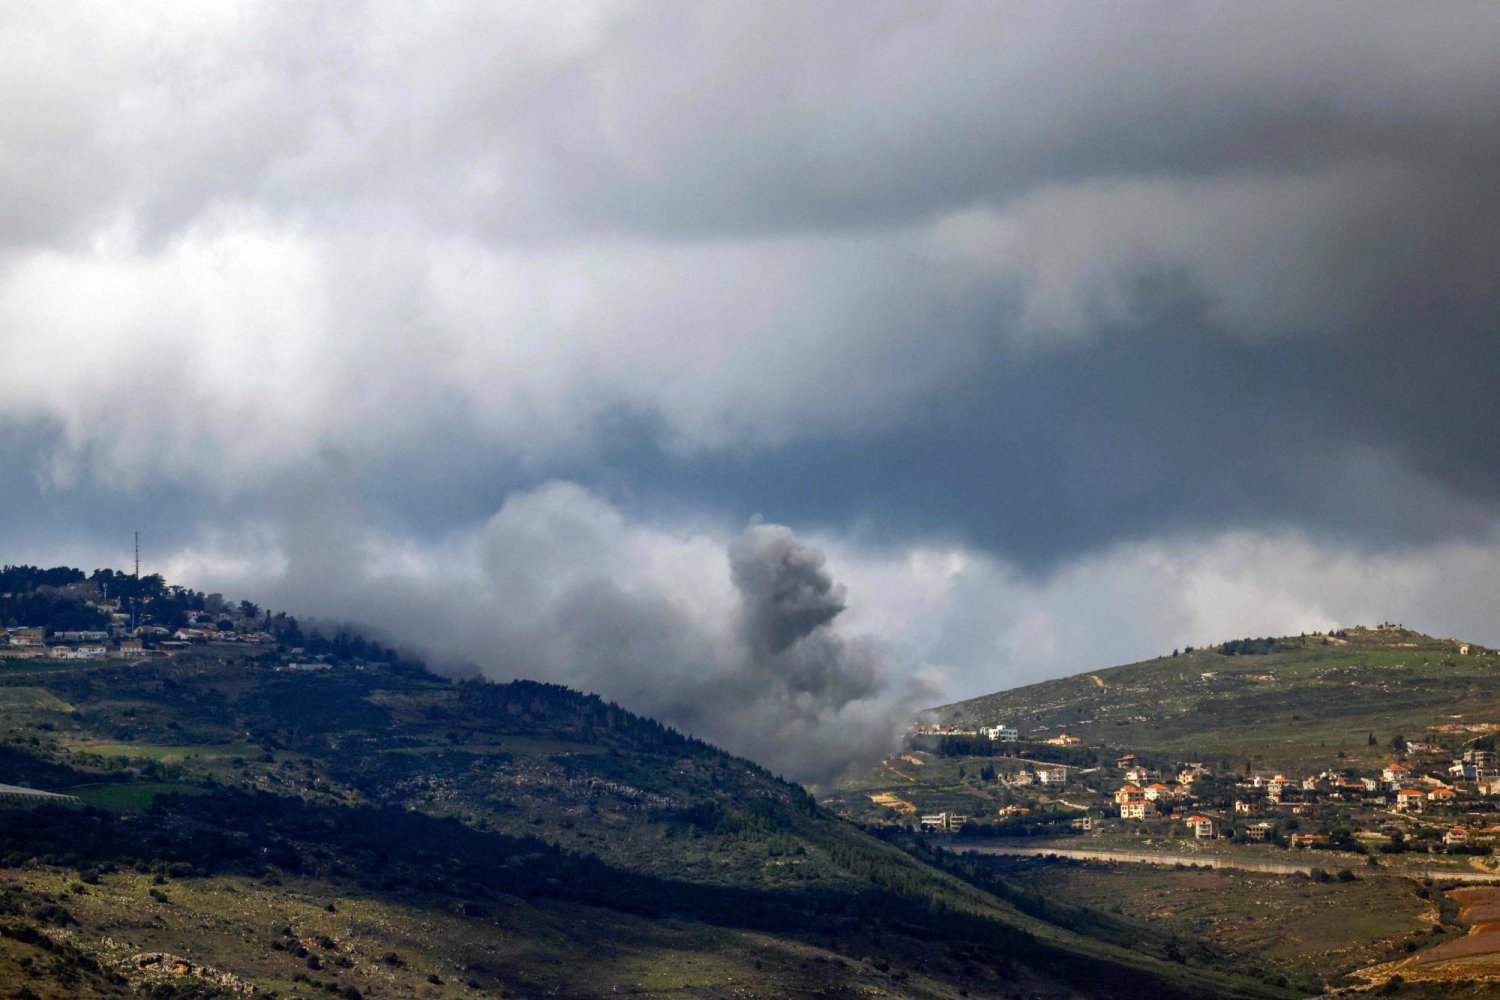 دخان يتصاعد من موقع بين قريتَي العديسة ومركبا اللبنانيتين في أثناء القصف الإسرائيلي (أ.ف.ب)